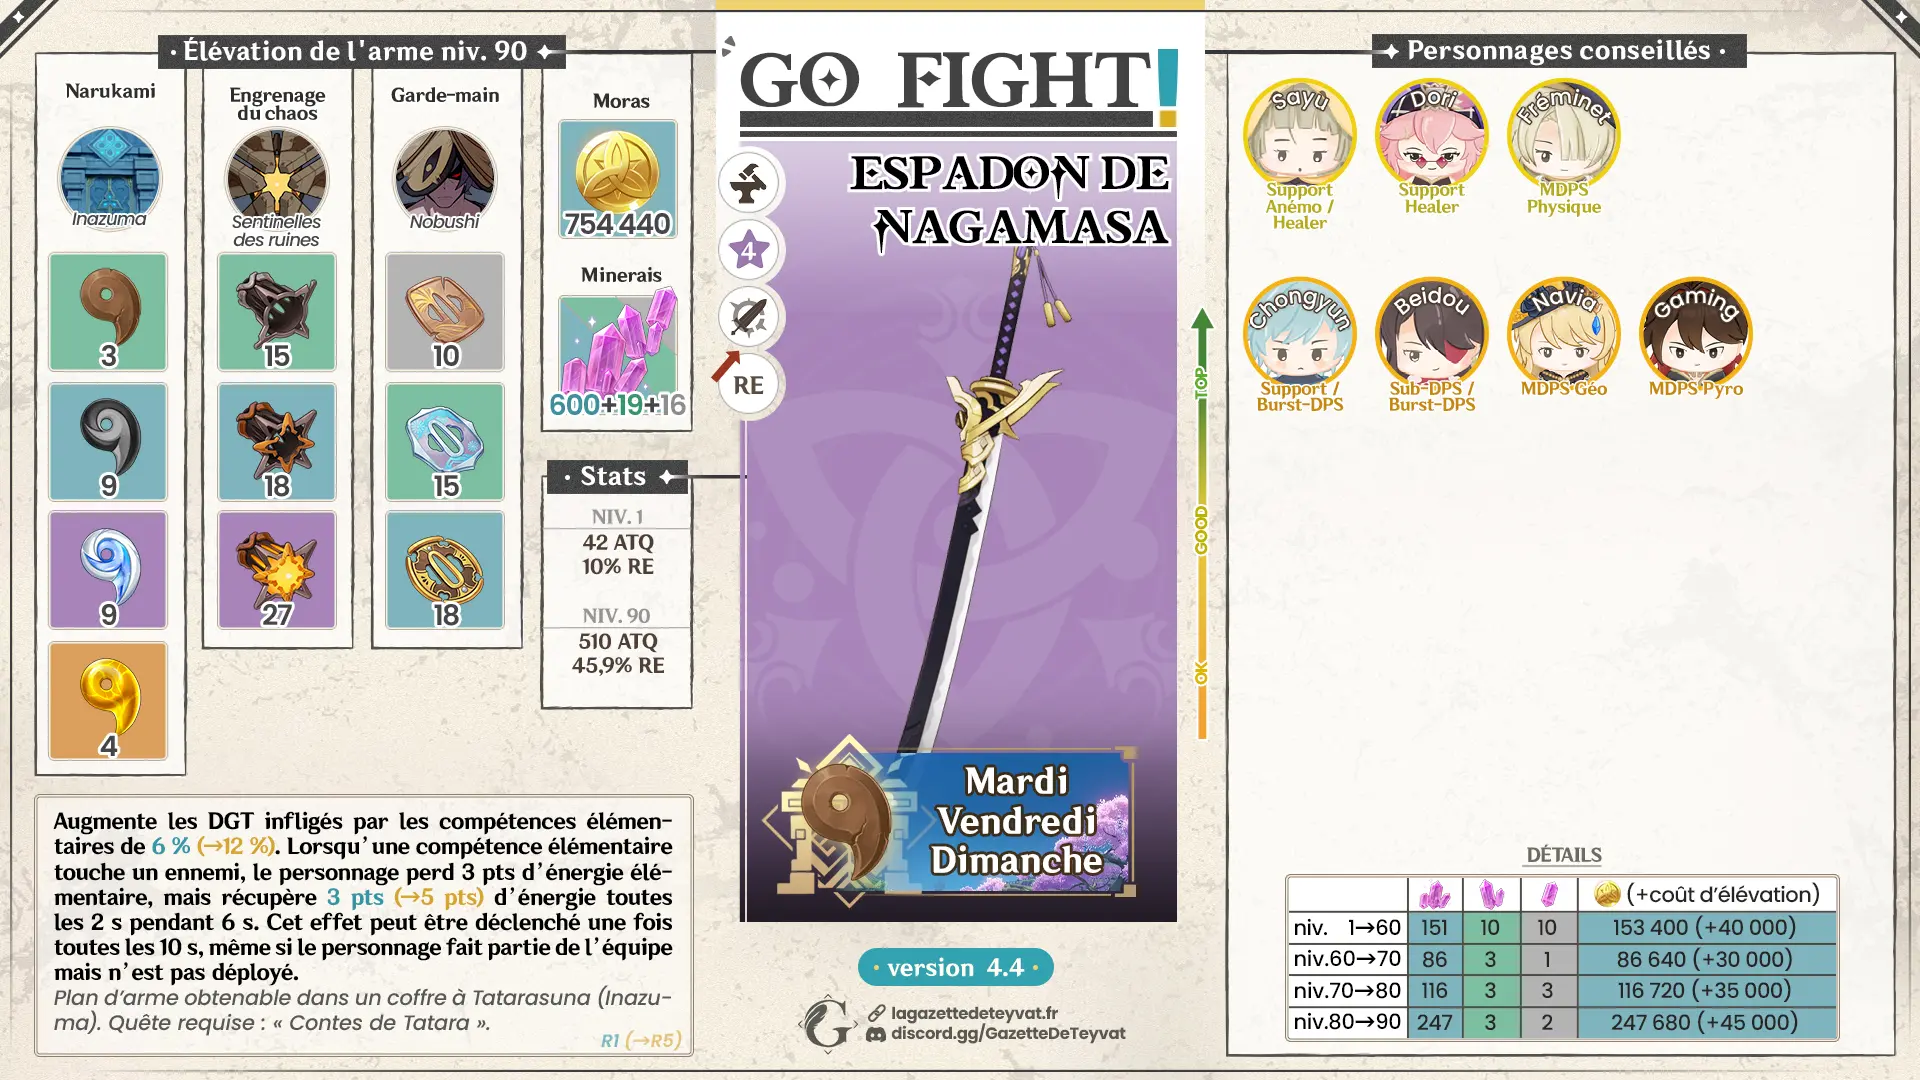 Espadon de Nagamasa Genshin Impact, guide complet, farm, personnages conseillés